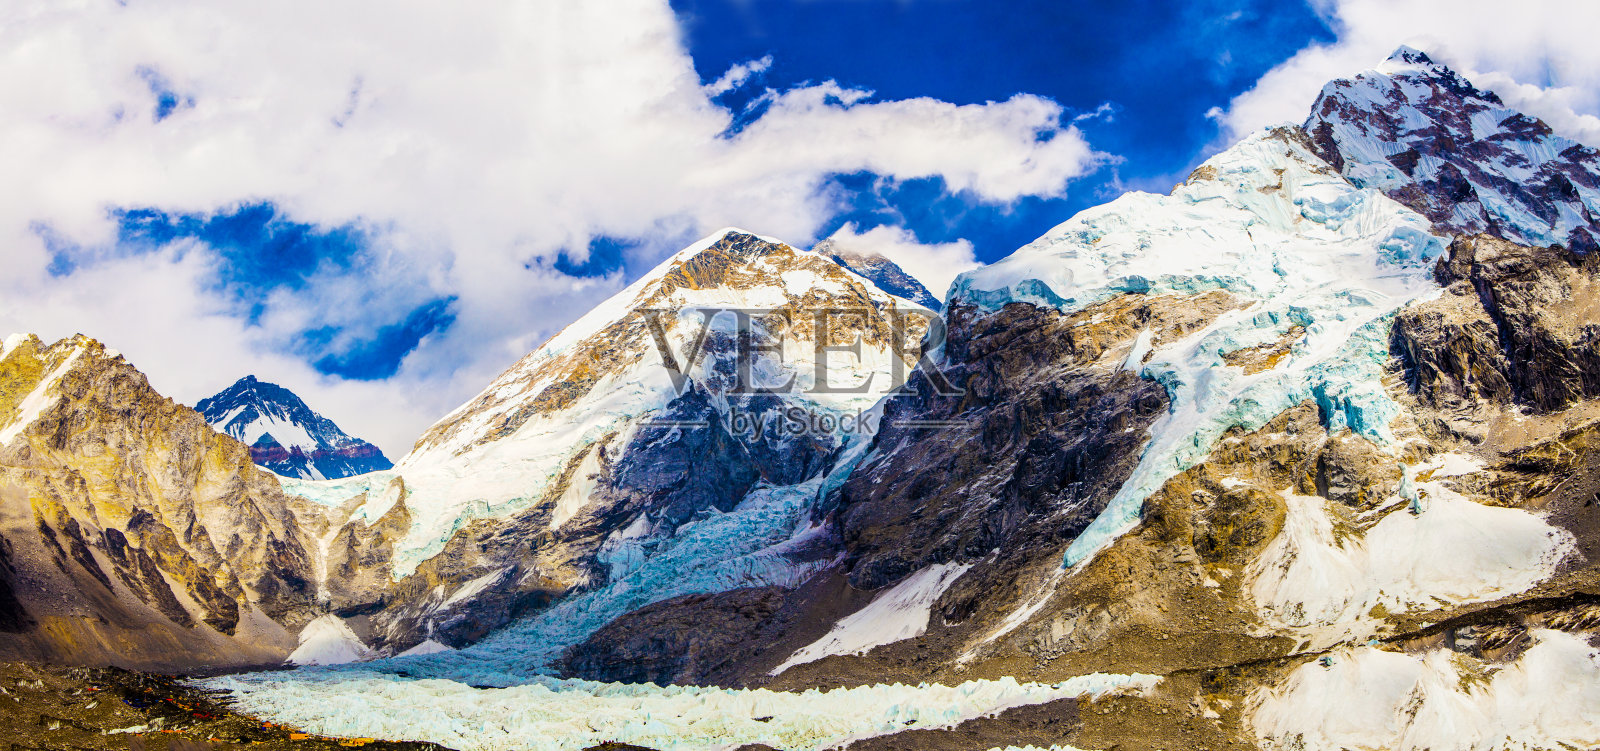 长泽、珠穆朗玛峰、羽扇山和昆布冰瀑的大本营景观照片摄影图片